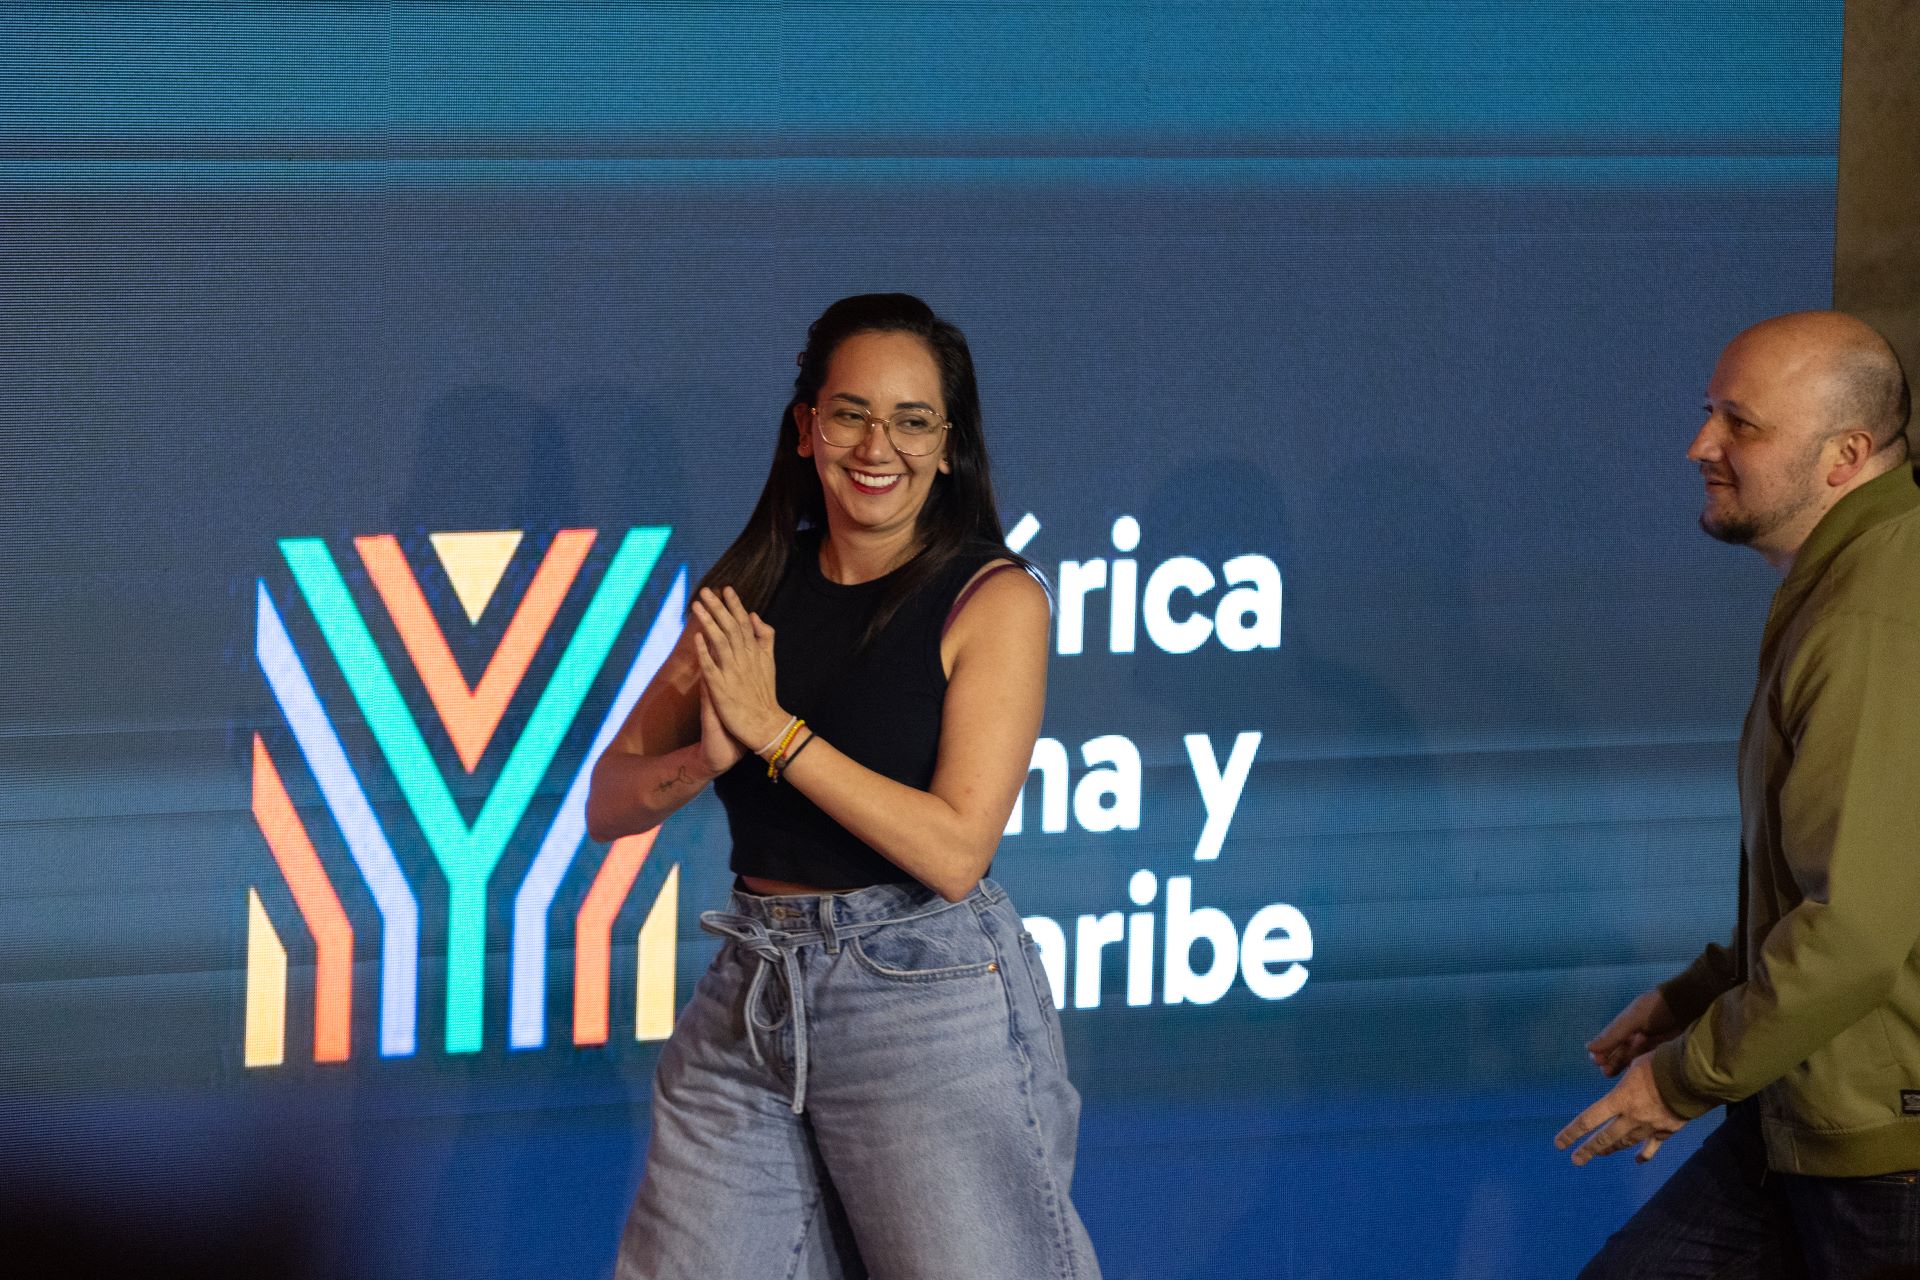 Conoce la nueva marca global de América Latina y el Caribe